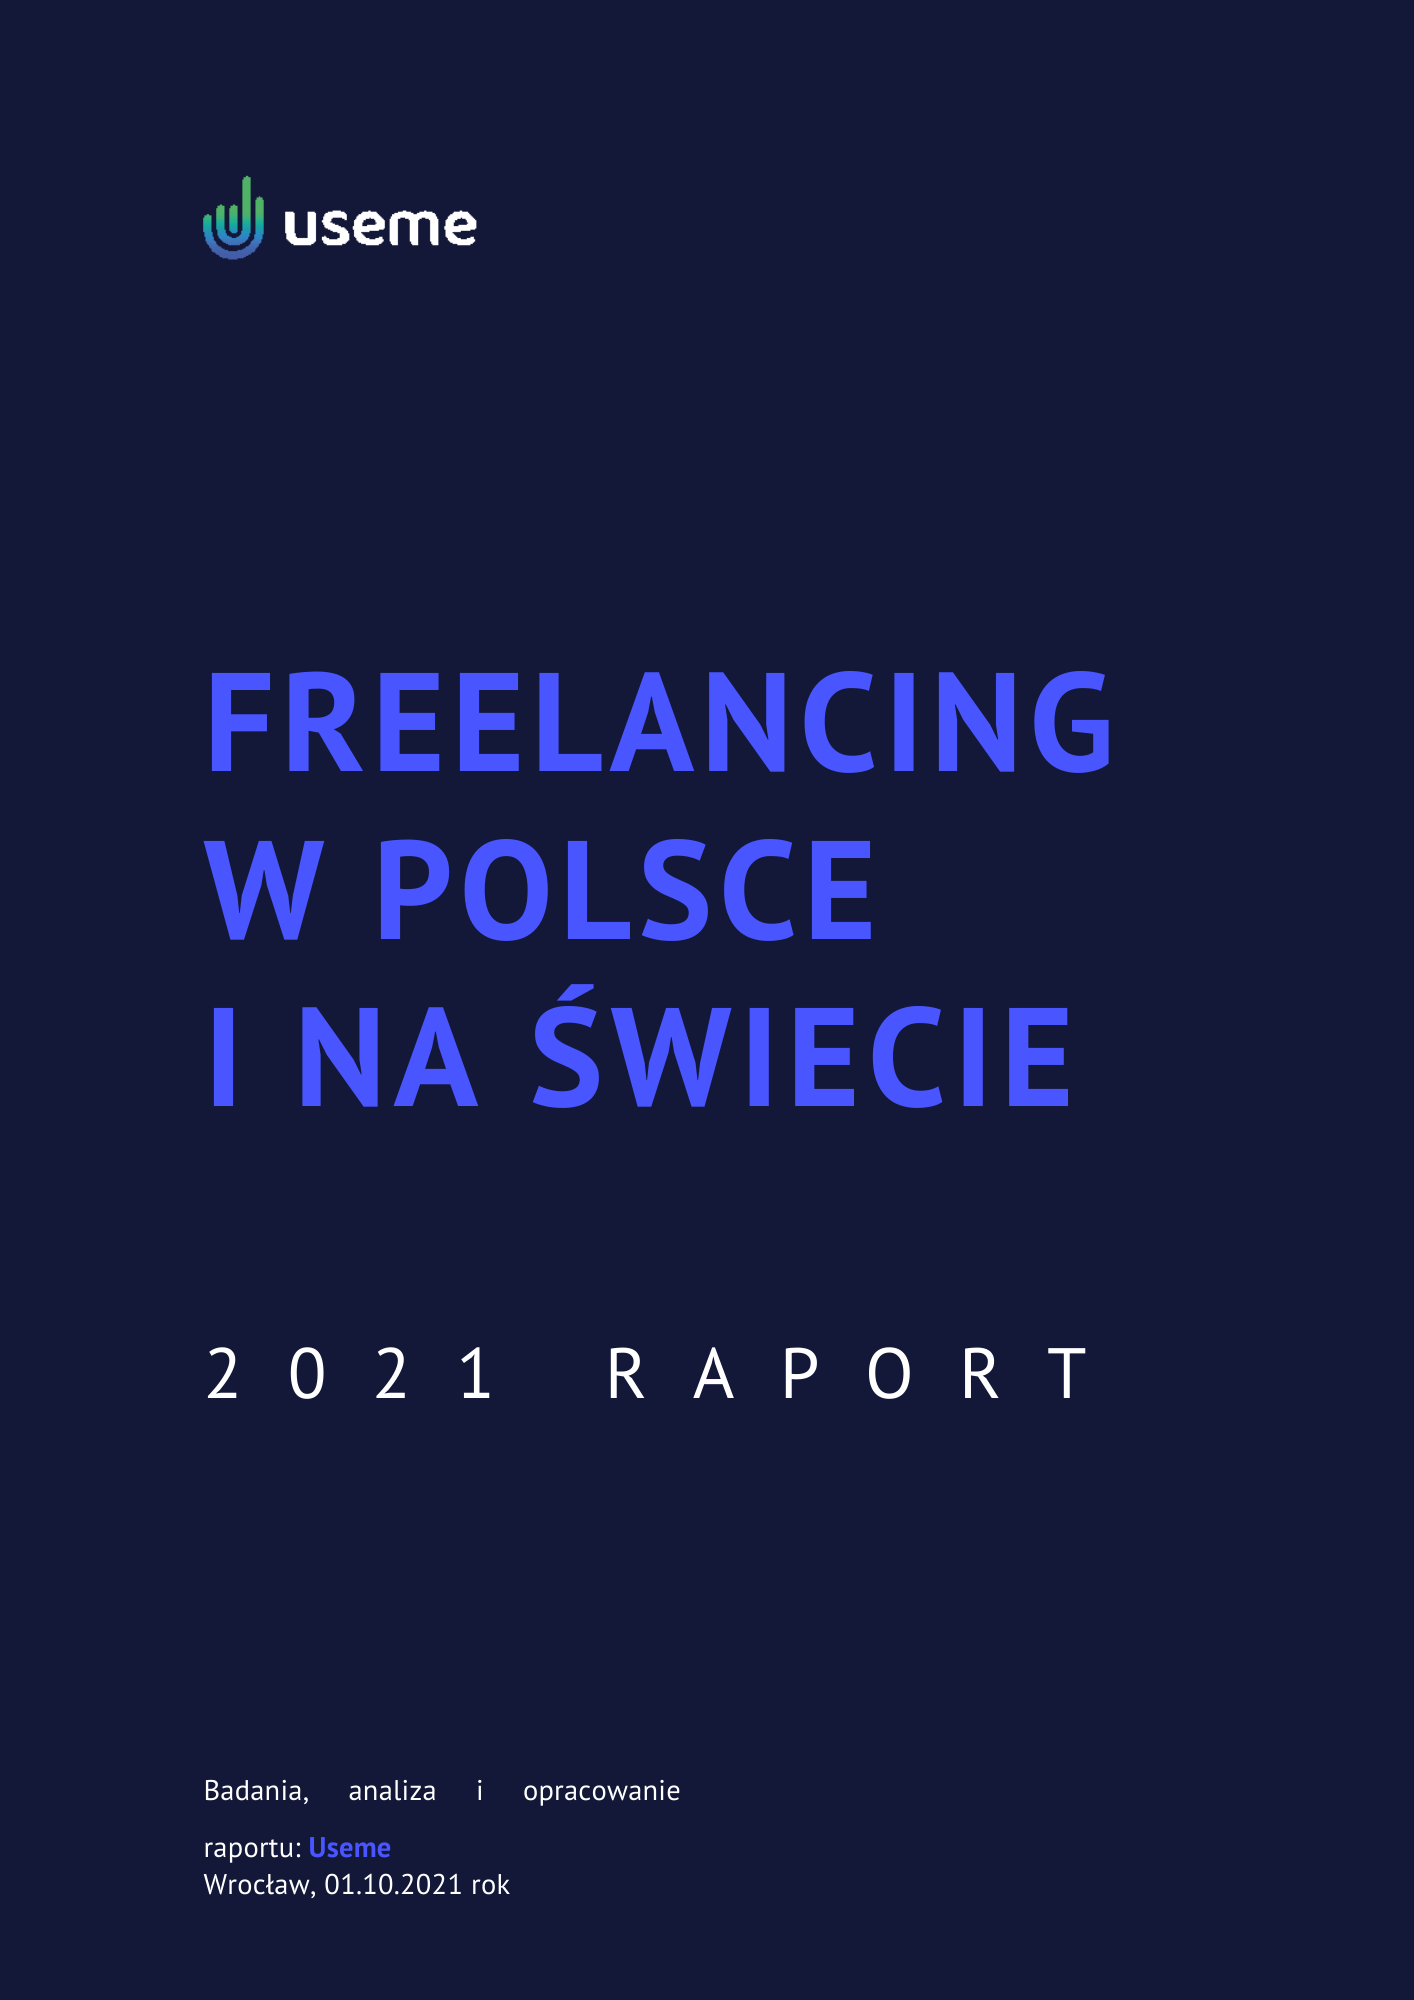 Okładka Raportu Useme Freelancing w Polsce i na świecie 2021